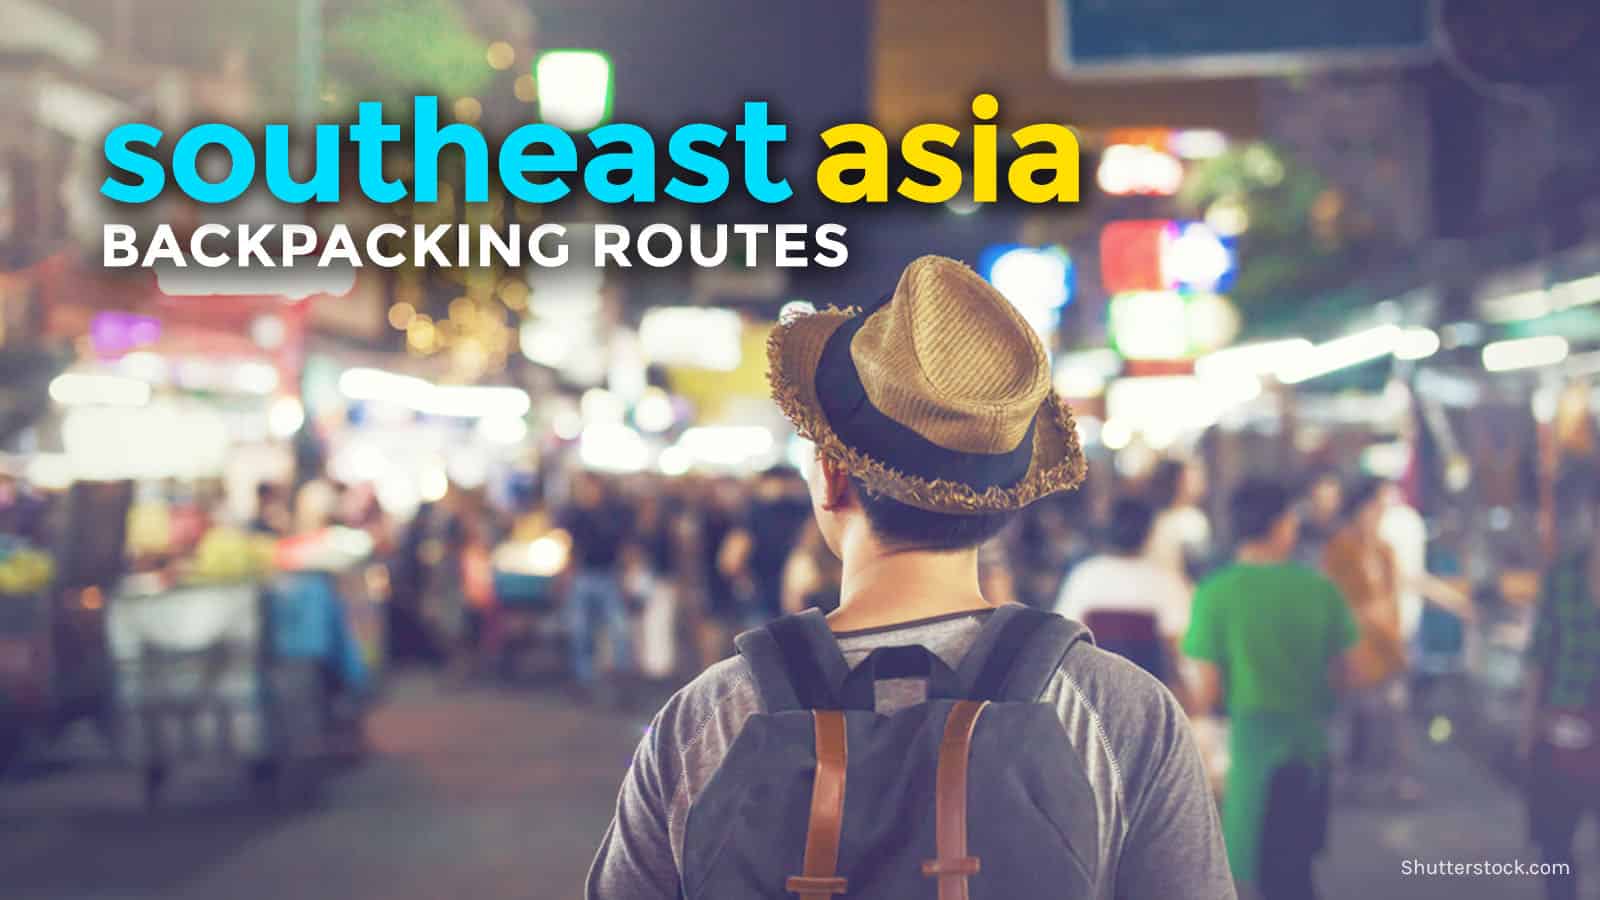 东南亚:自助背包旅行路线(2周)